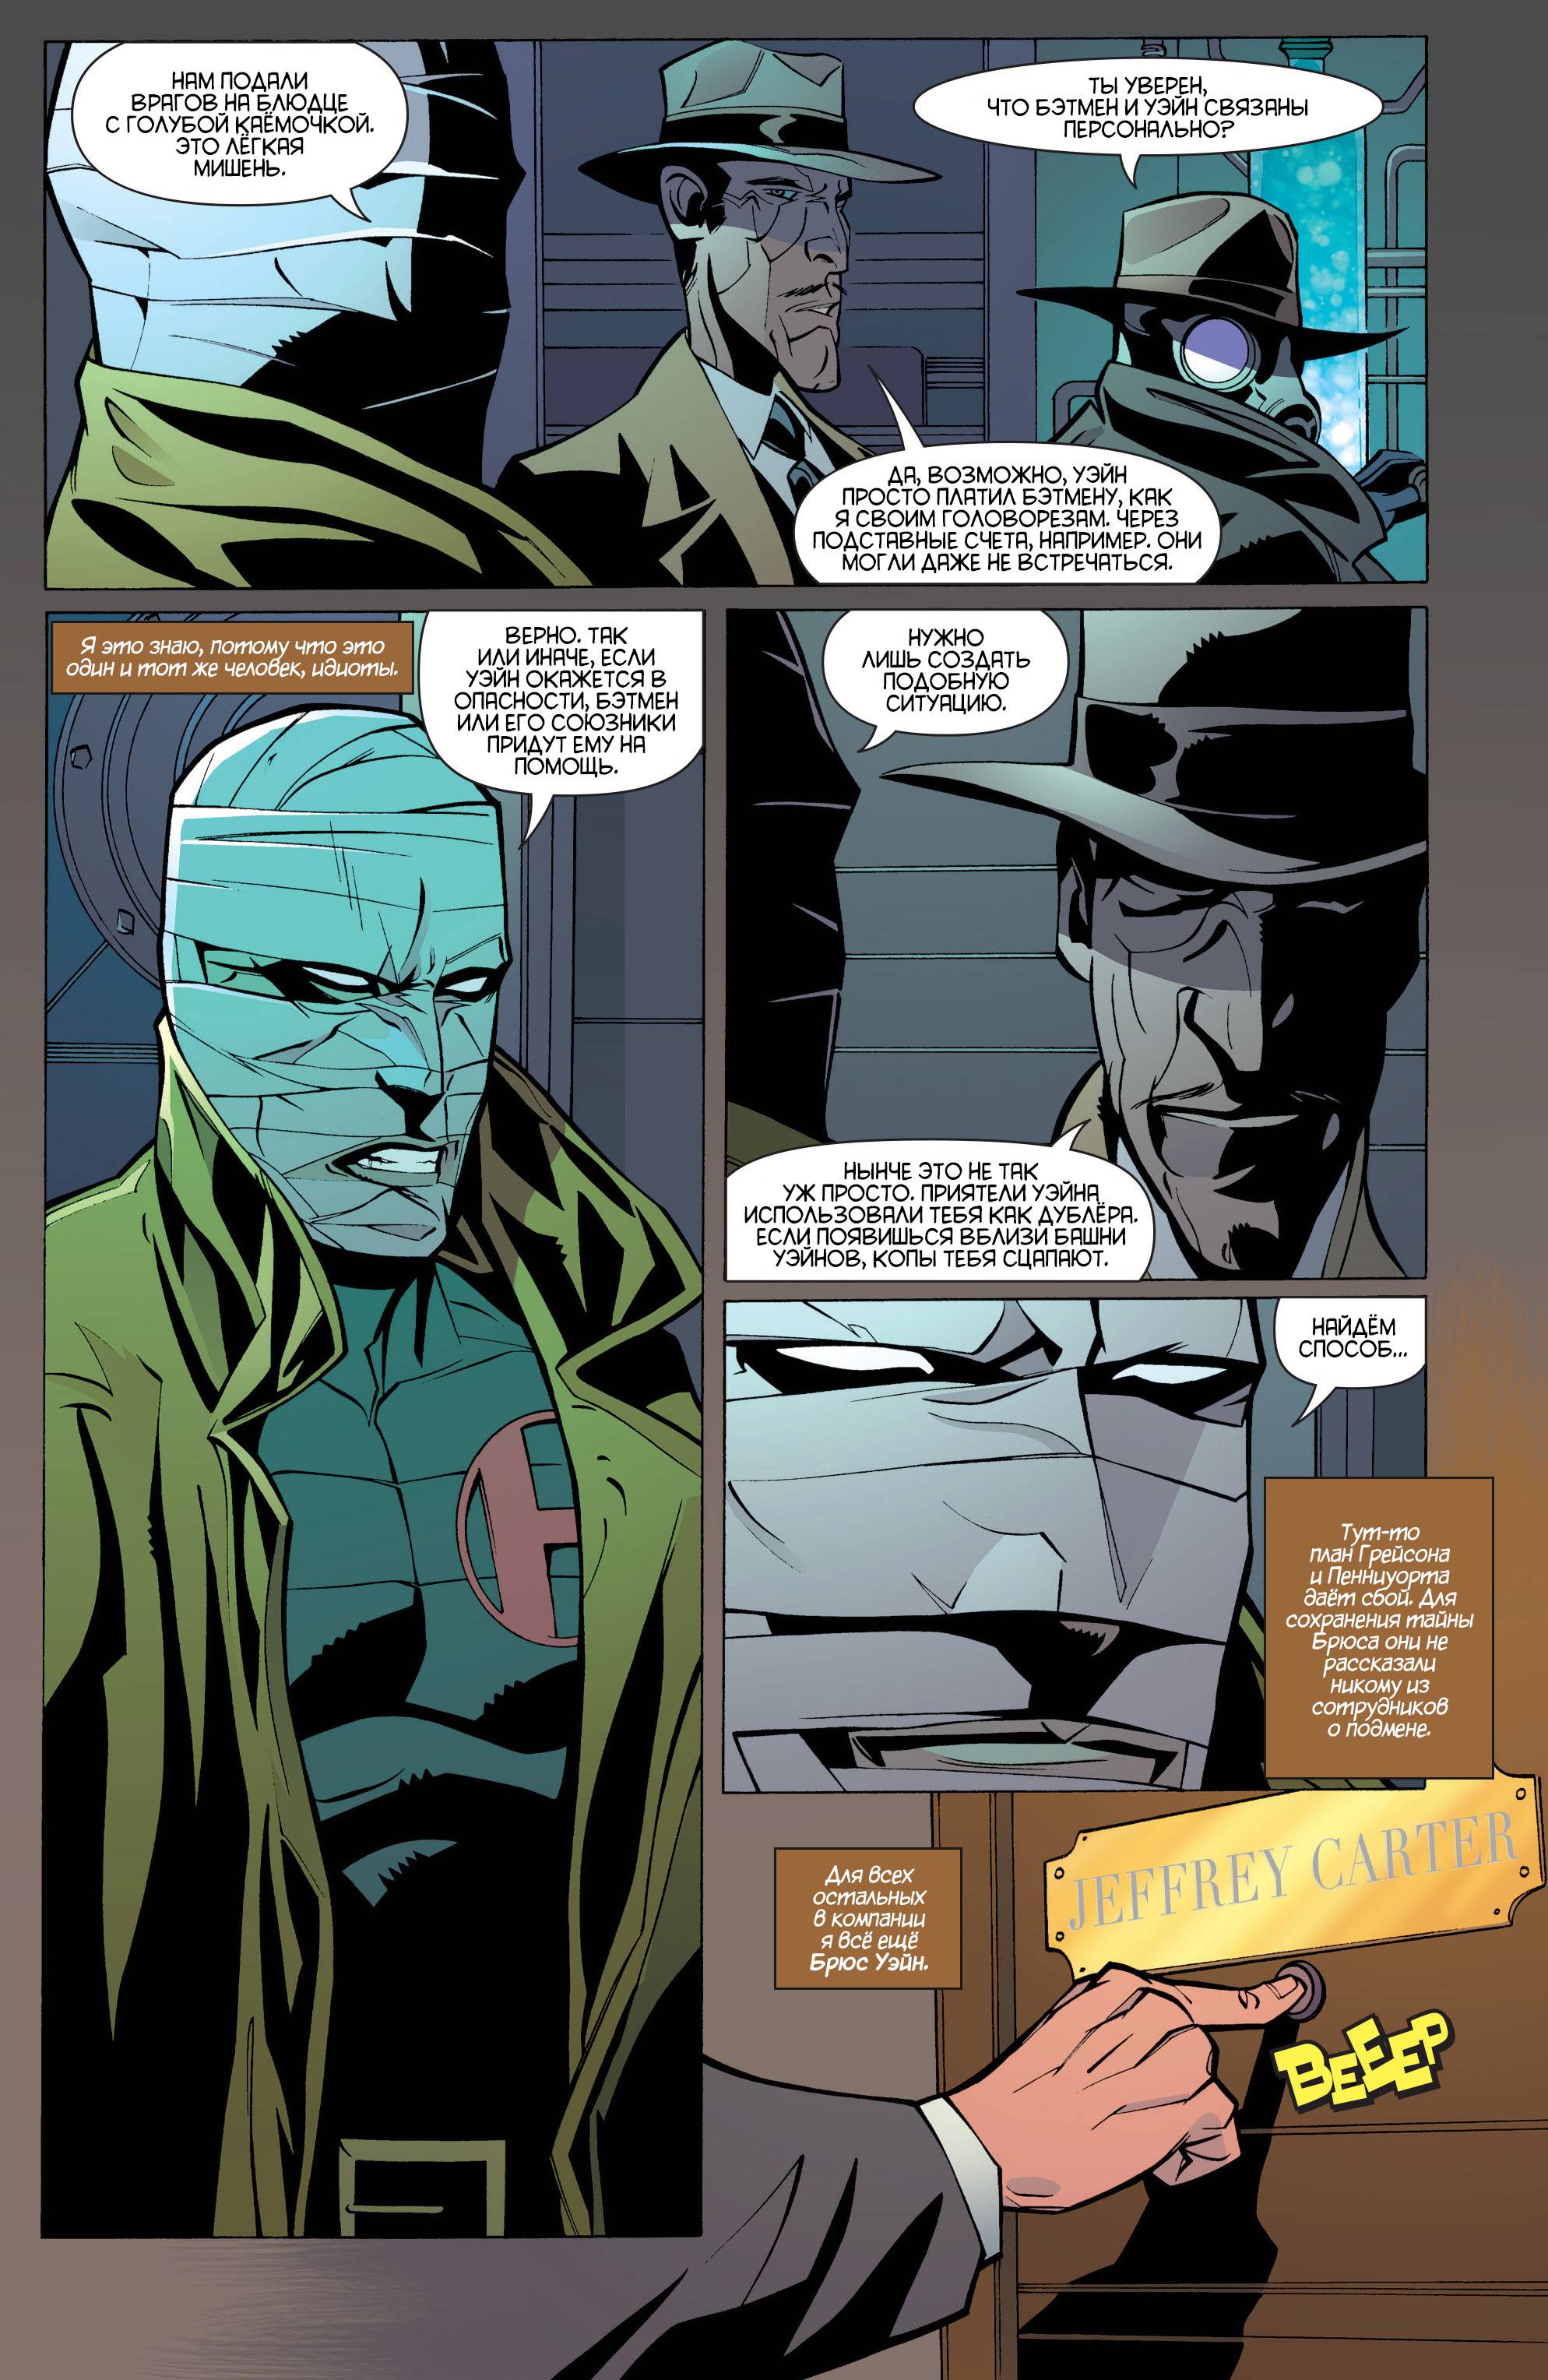 Бэтмен: Улицы Готэма №19 (Batman: Streets of Gotham #19) - страница 16 -  читать комикс онлайн бесплатно | UniComics